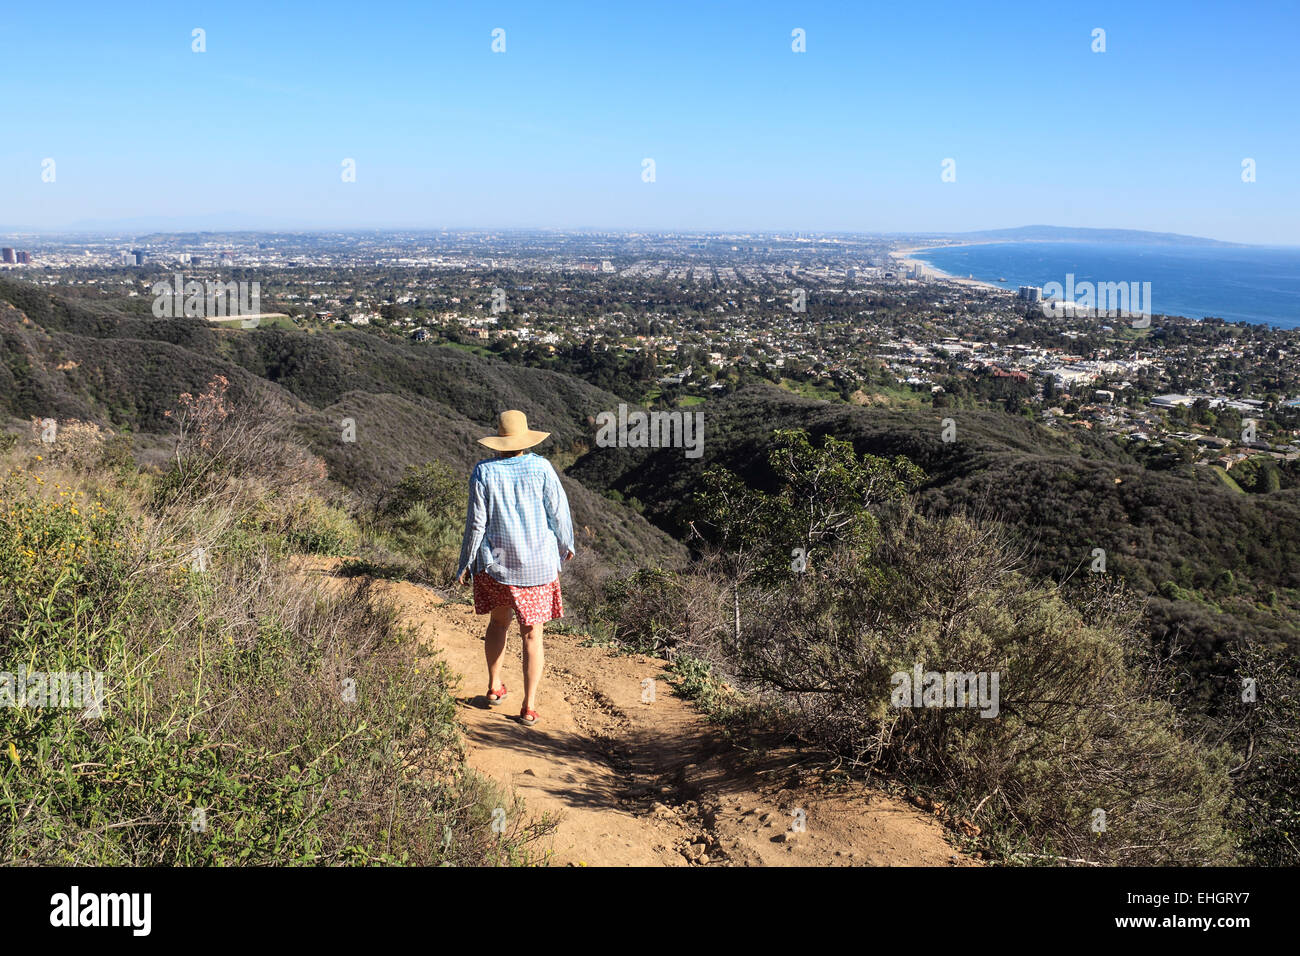 Randonneur sur le sentier de la crête de Temescal, avec Santa Monica Bay à distance Banque D'Images